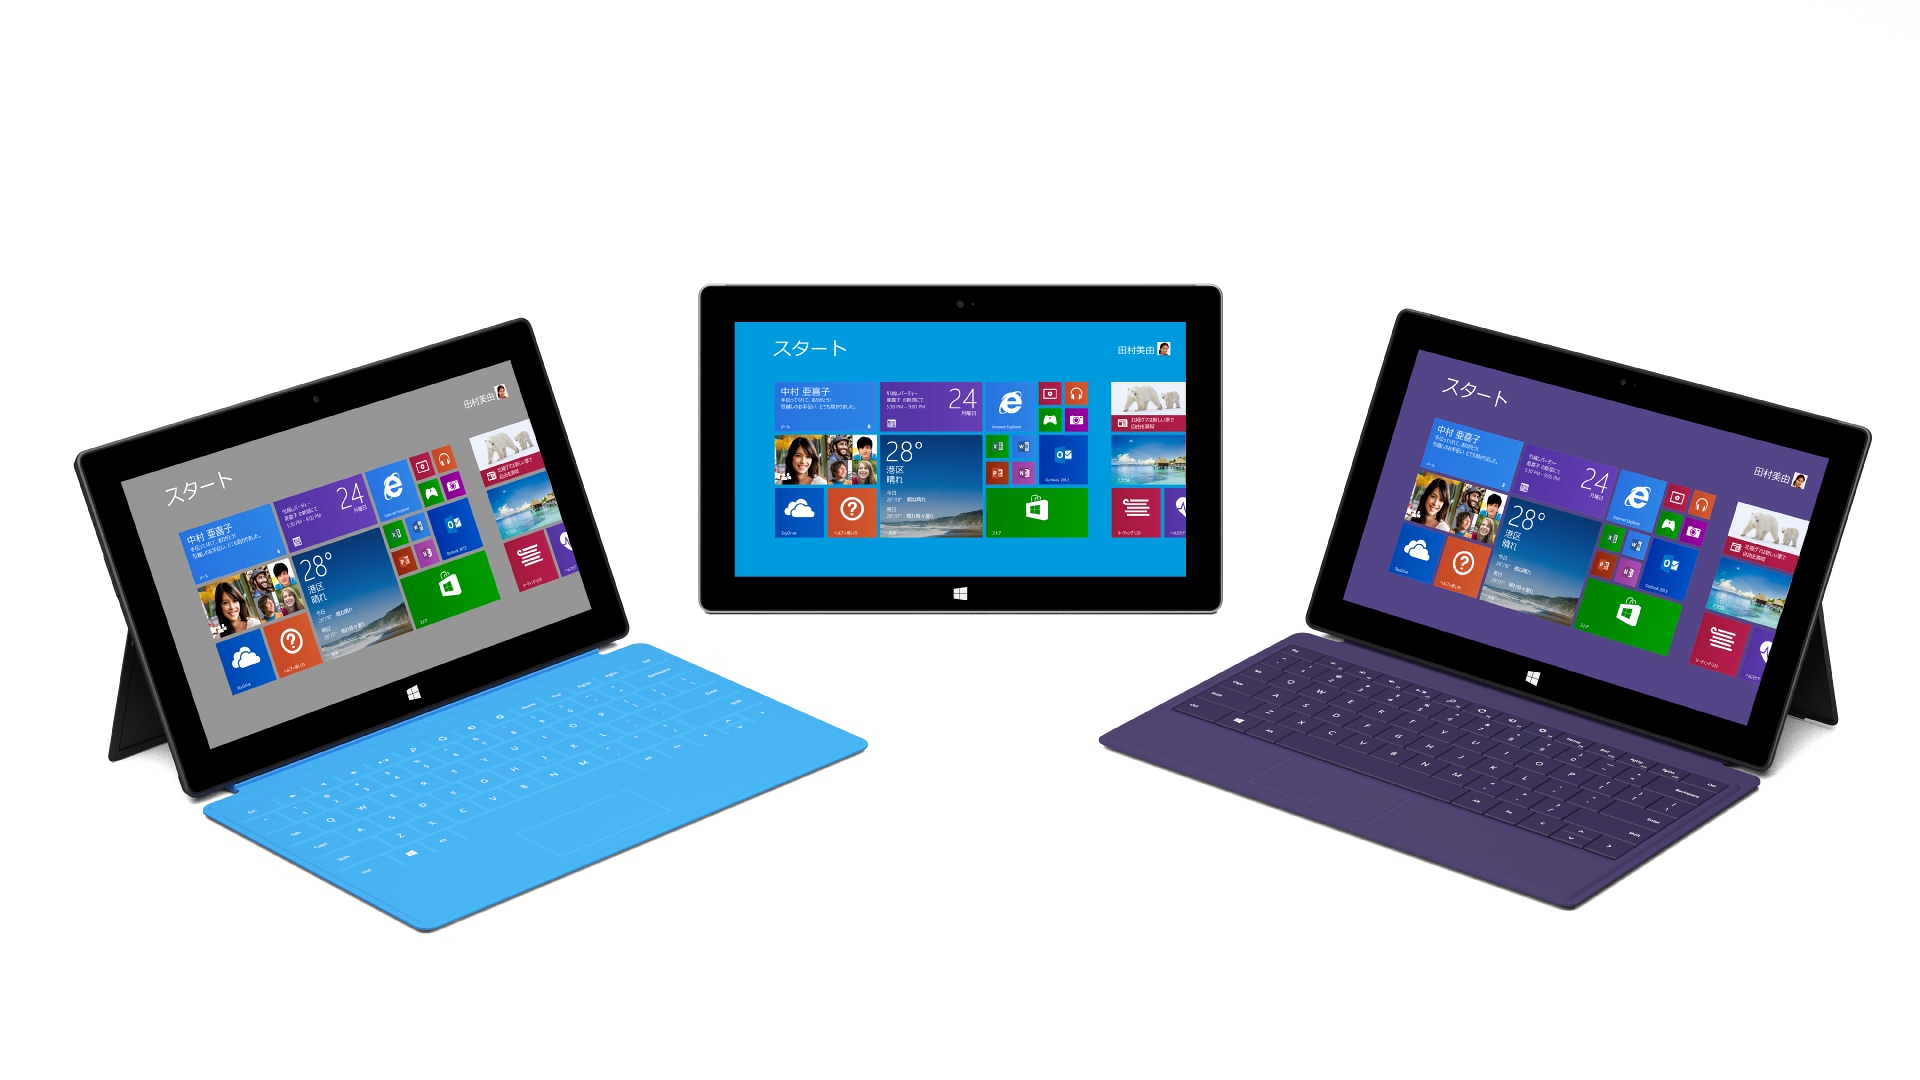 マイクロソフト製タブレット「Surface」の新製品 Surface 2、Surface Pro 2 および新アクセサリを発売 - News